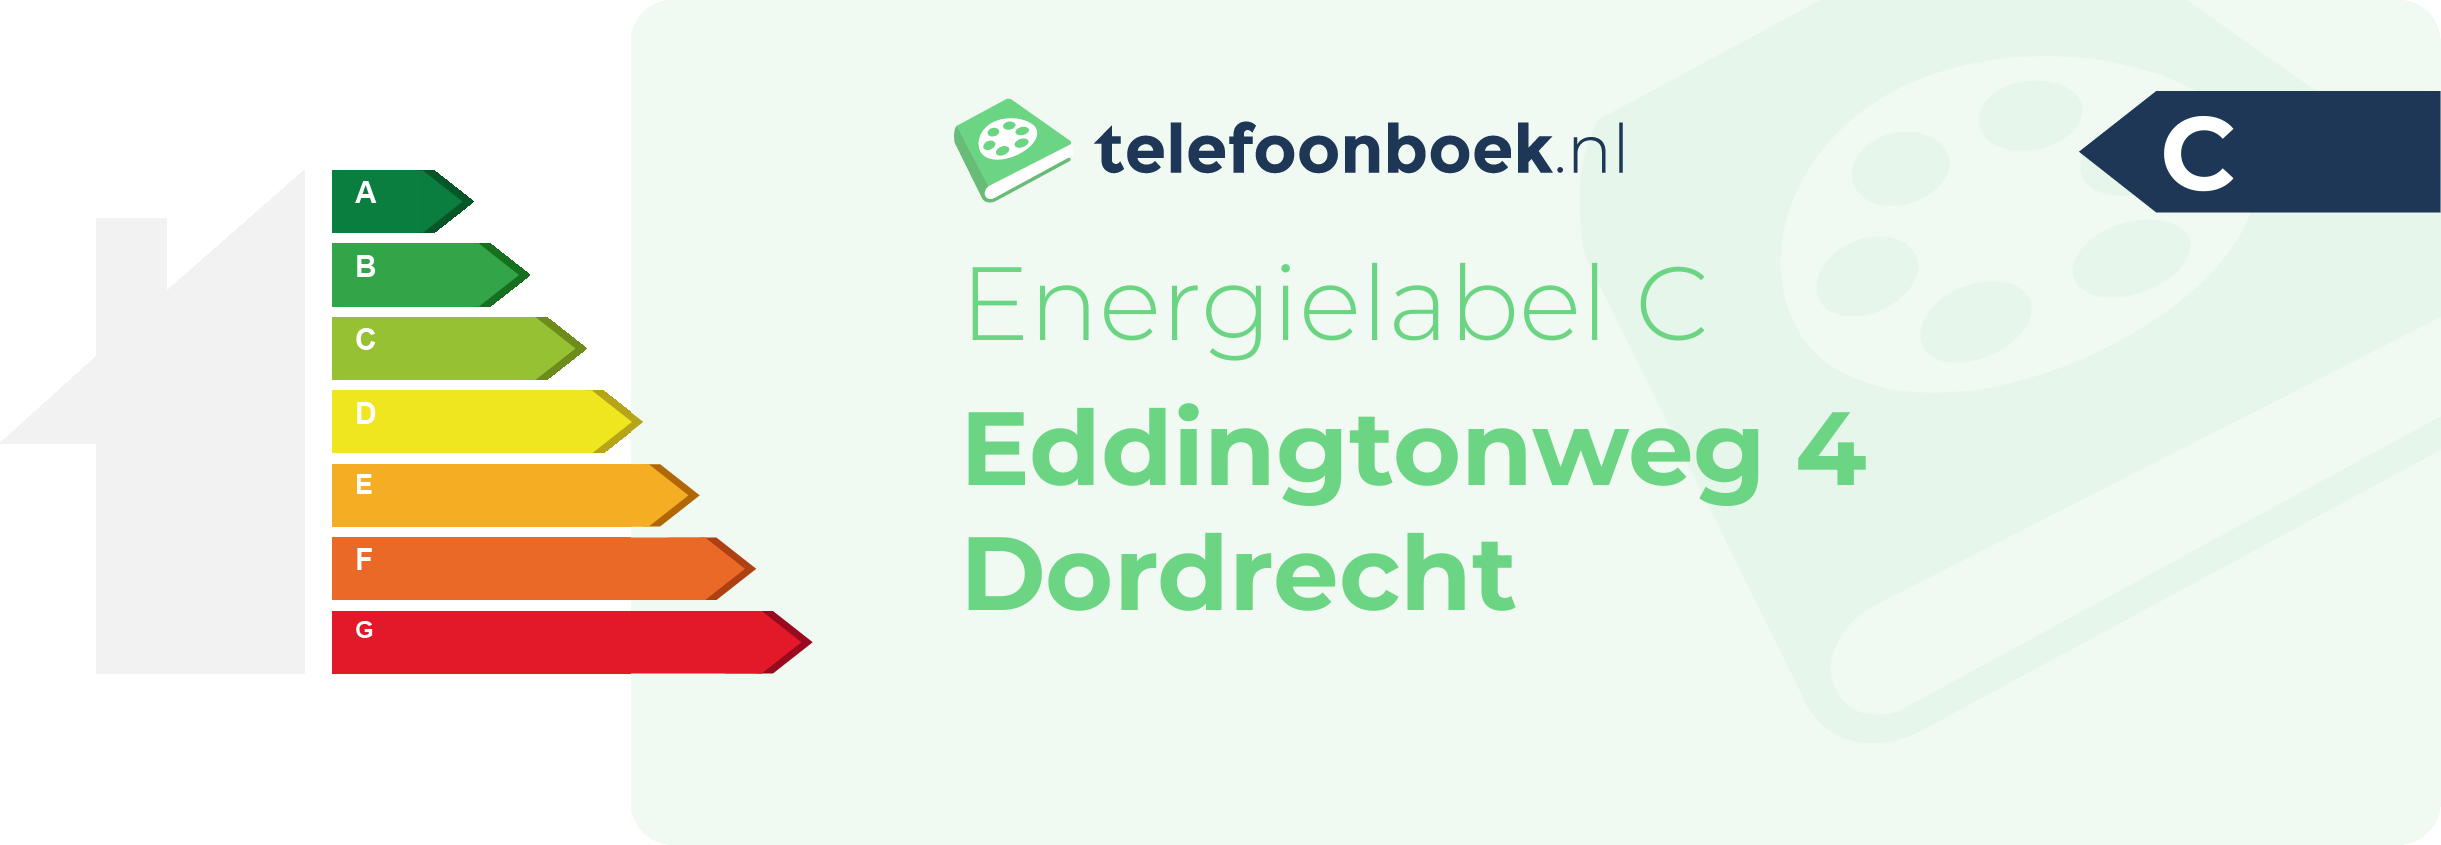 Energielabel Eddingtonweg 4 Dordrecht